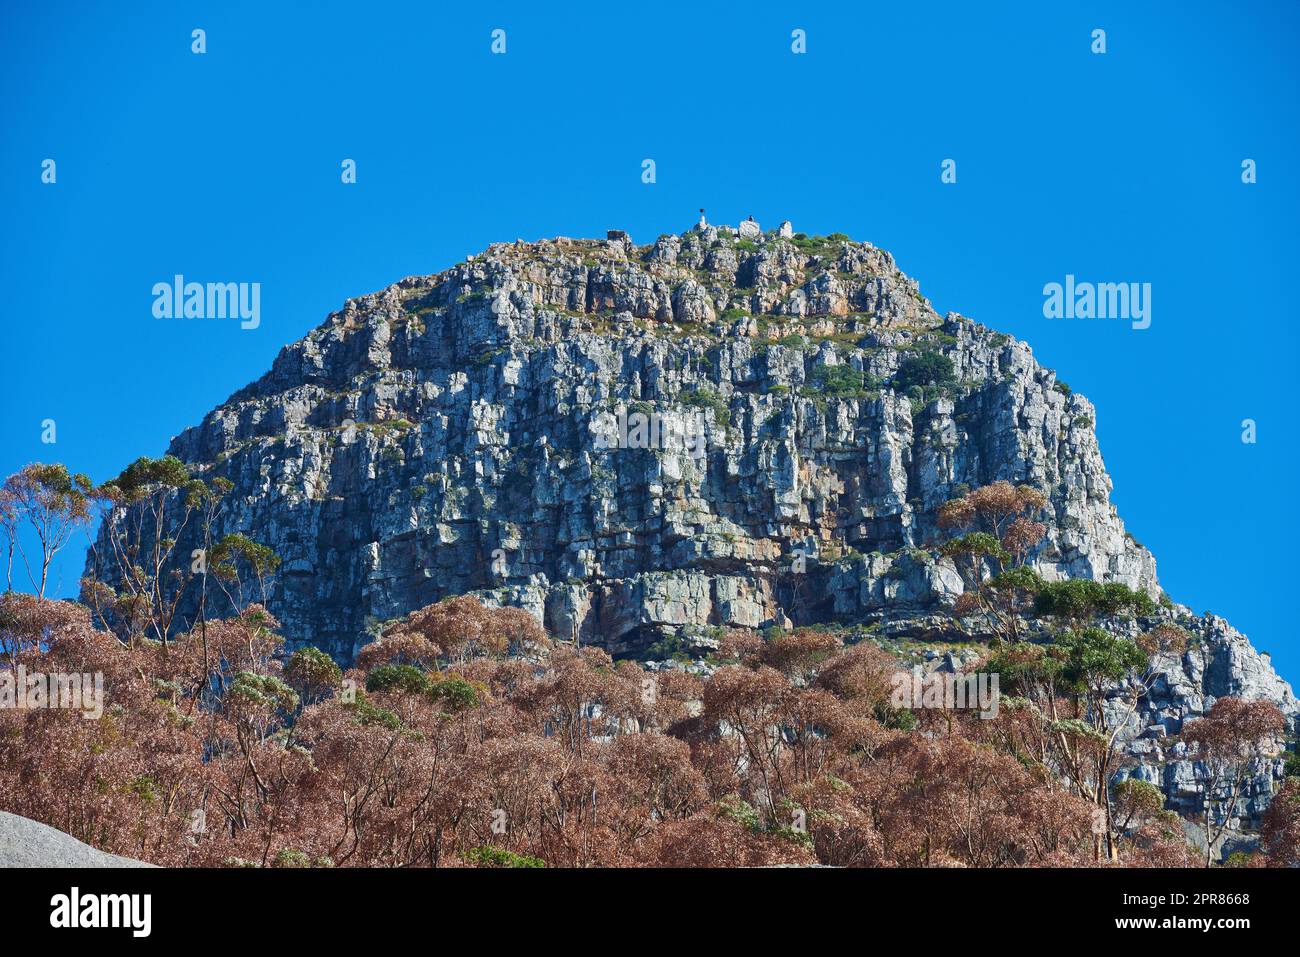 Ein großer Berg mit braunen und grünen Bäumen vor einem Hintergrund mit klarem blauen Himmel und Kopierraum. Das riesige felsige Gelände eignet sich perfekt zum Wandern, Klettern oder für malerische Ausblicke auf Kapstadts zerklüftete Natur Stockfoto